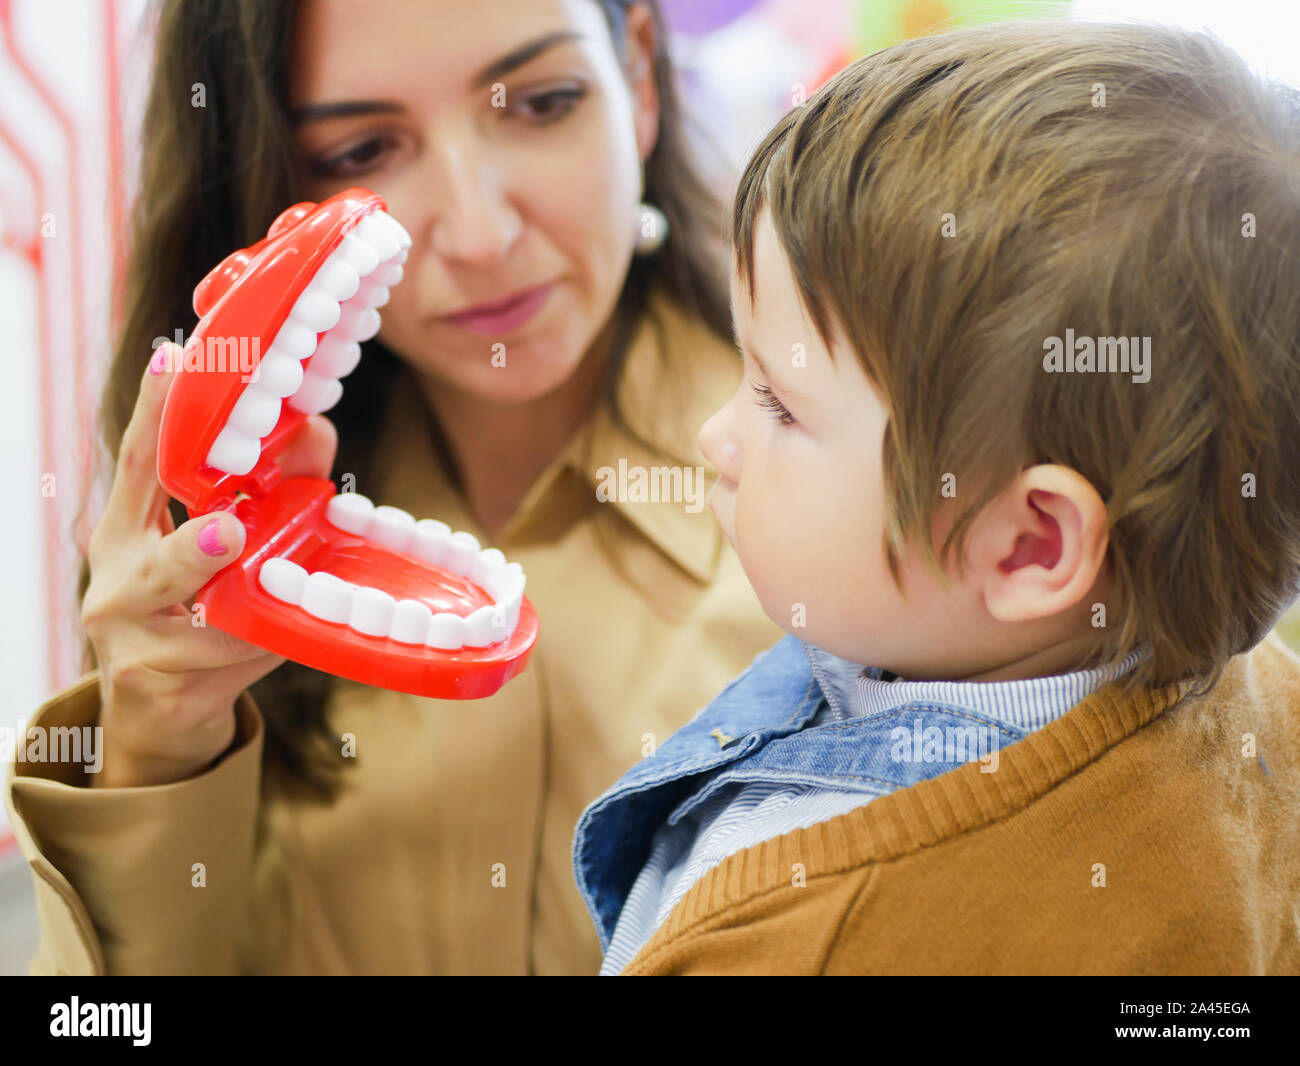 Layout des menschlichen Kiefers. Kiefer Spielzeug. Layout der Kiefer zu Studenten der Zahnmedizin zu demonstrieren. Mama zeigt den Kiefer auf das Kind. Stockfoto